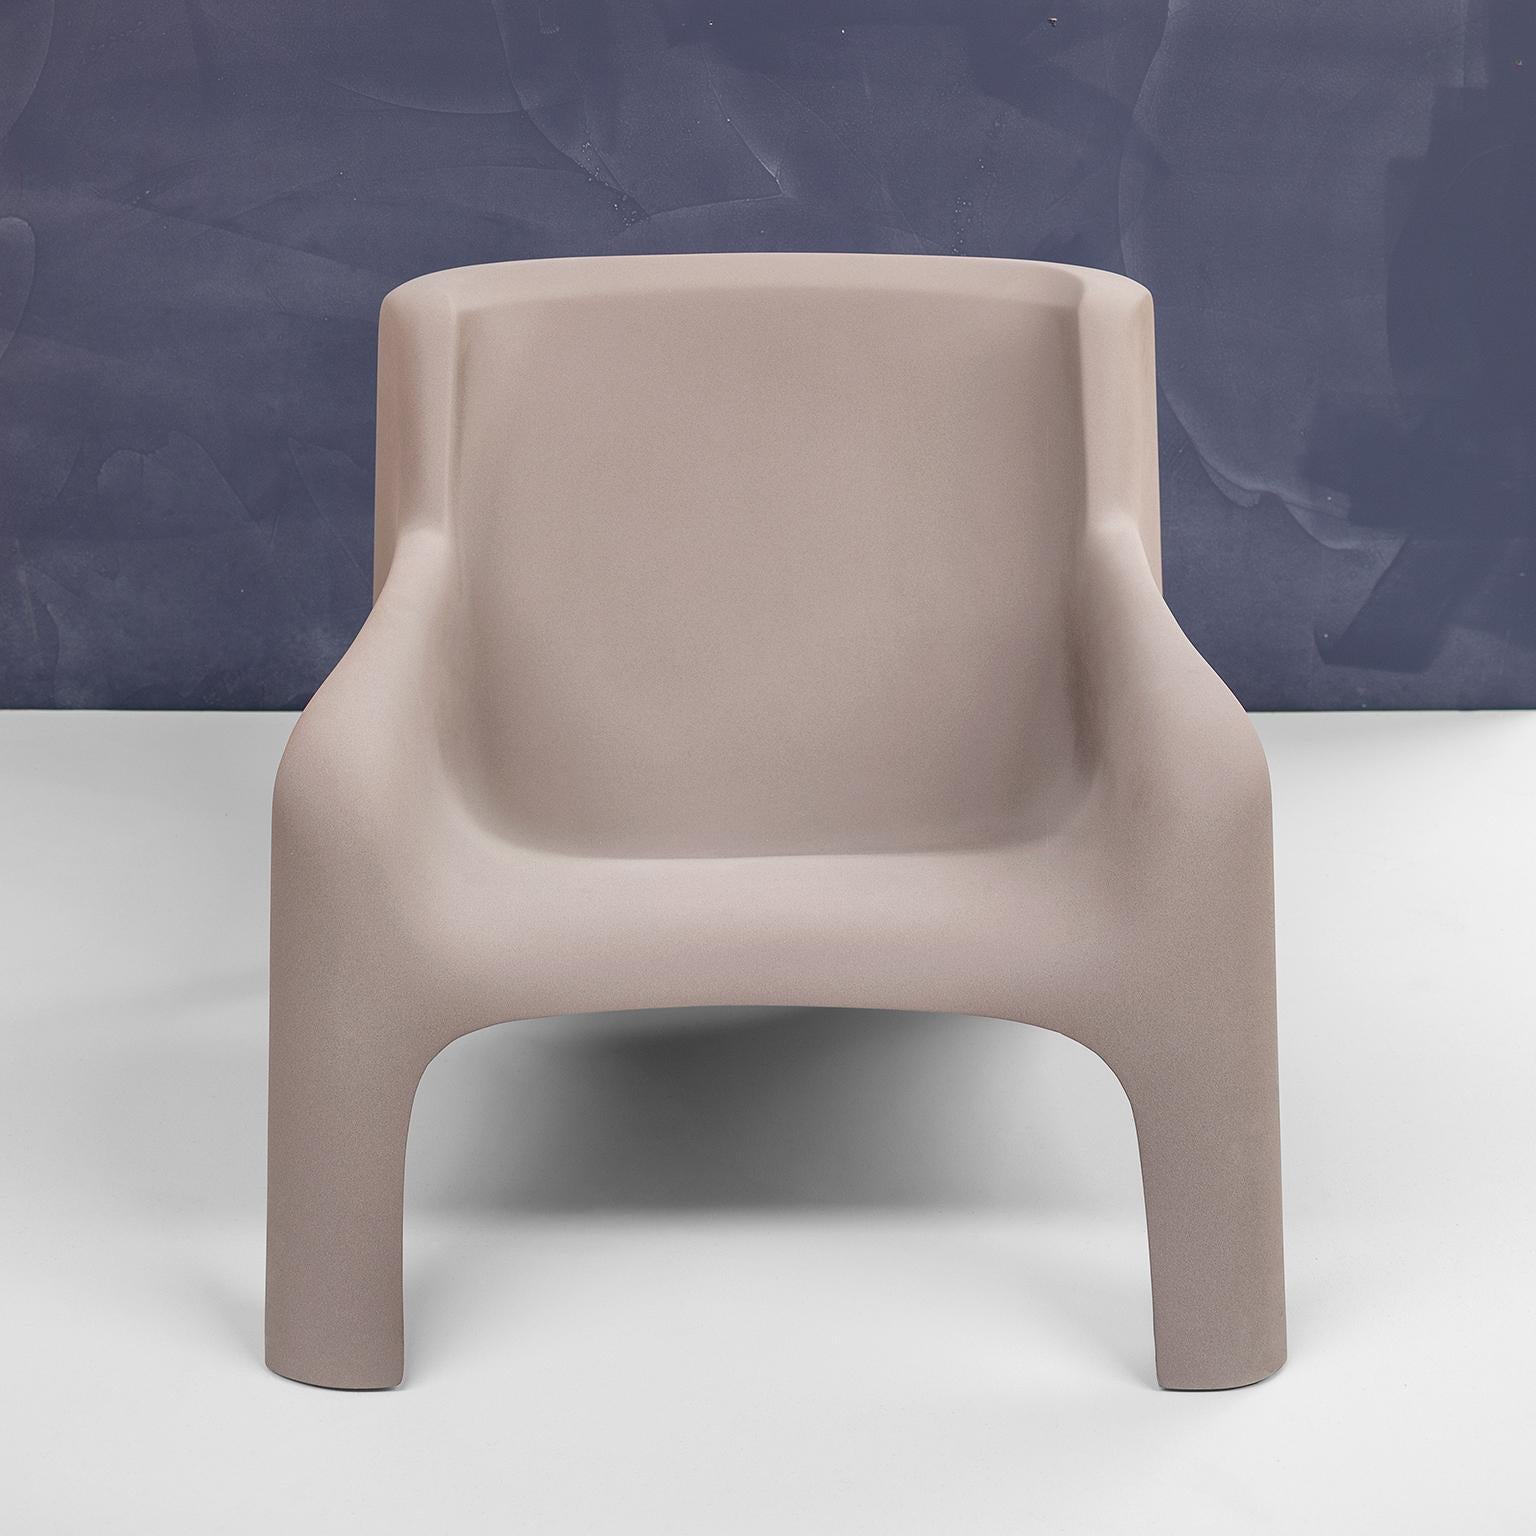 Gaia Armchair by Arflex Designer Bartoli Transformed by Draga&Aurel Fiberglass 1